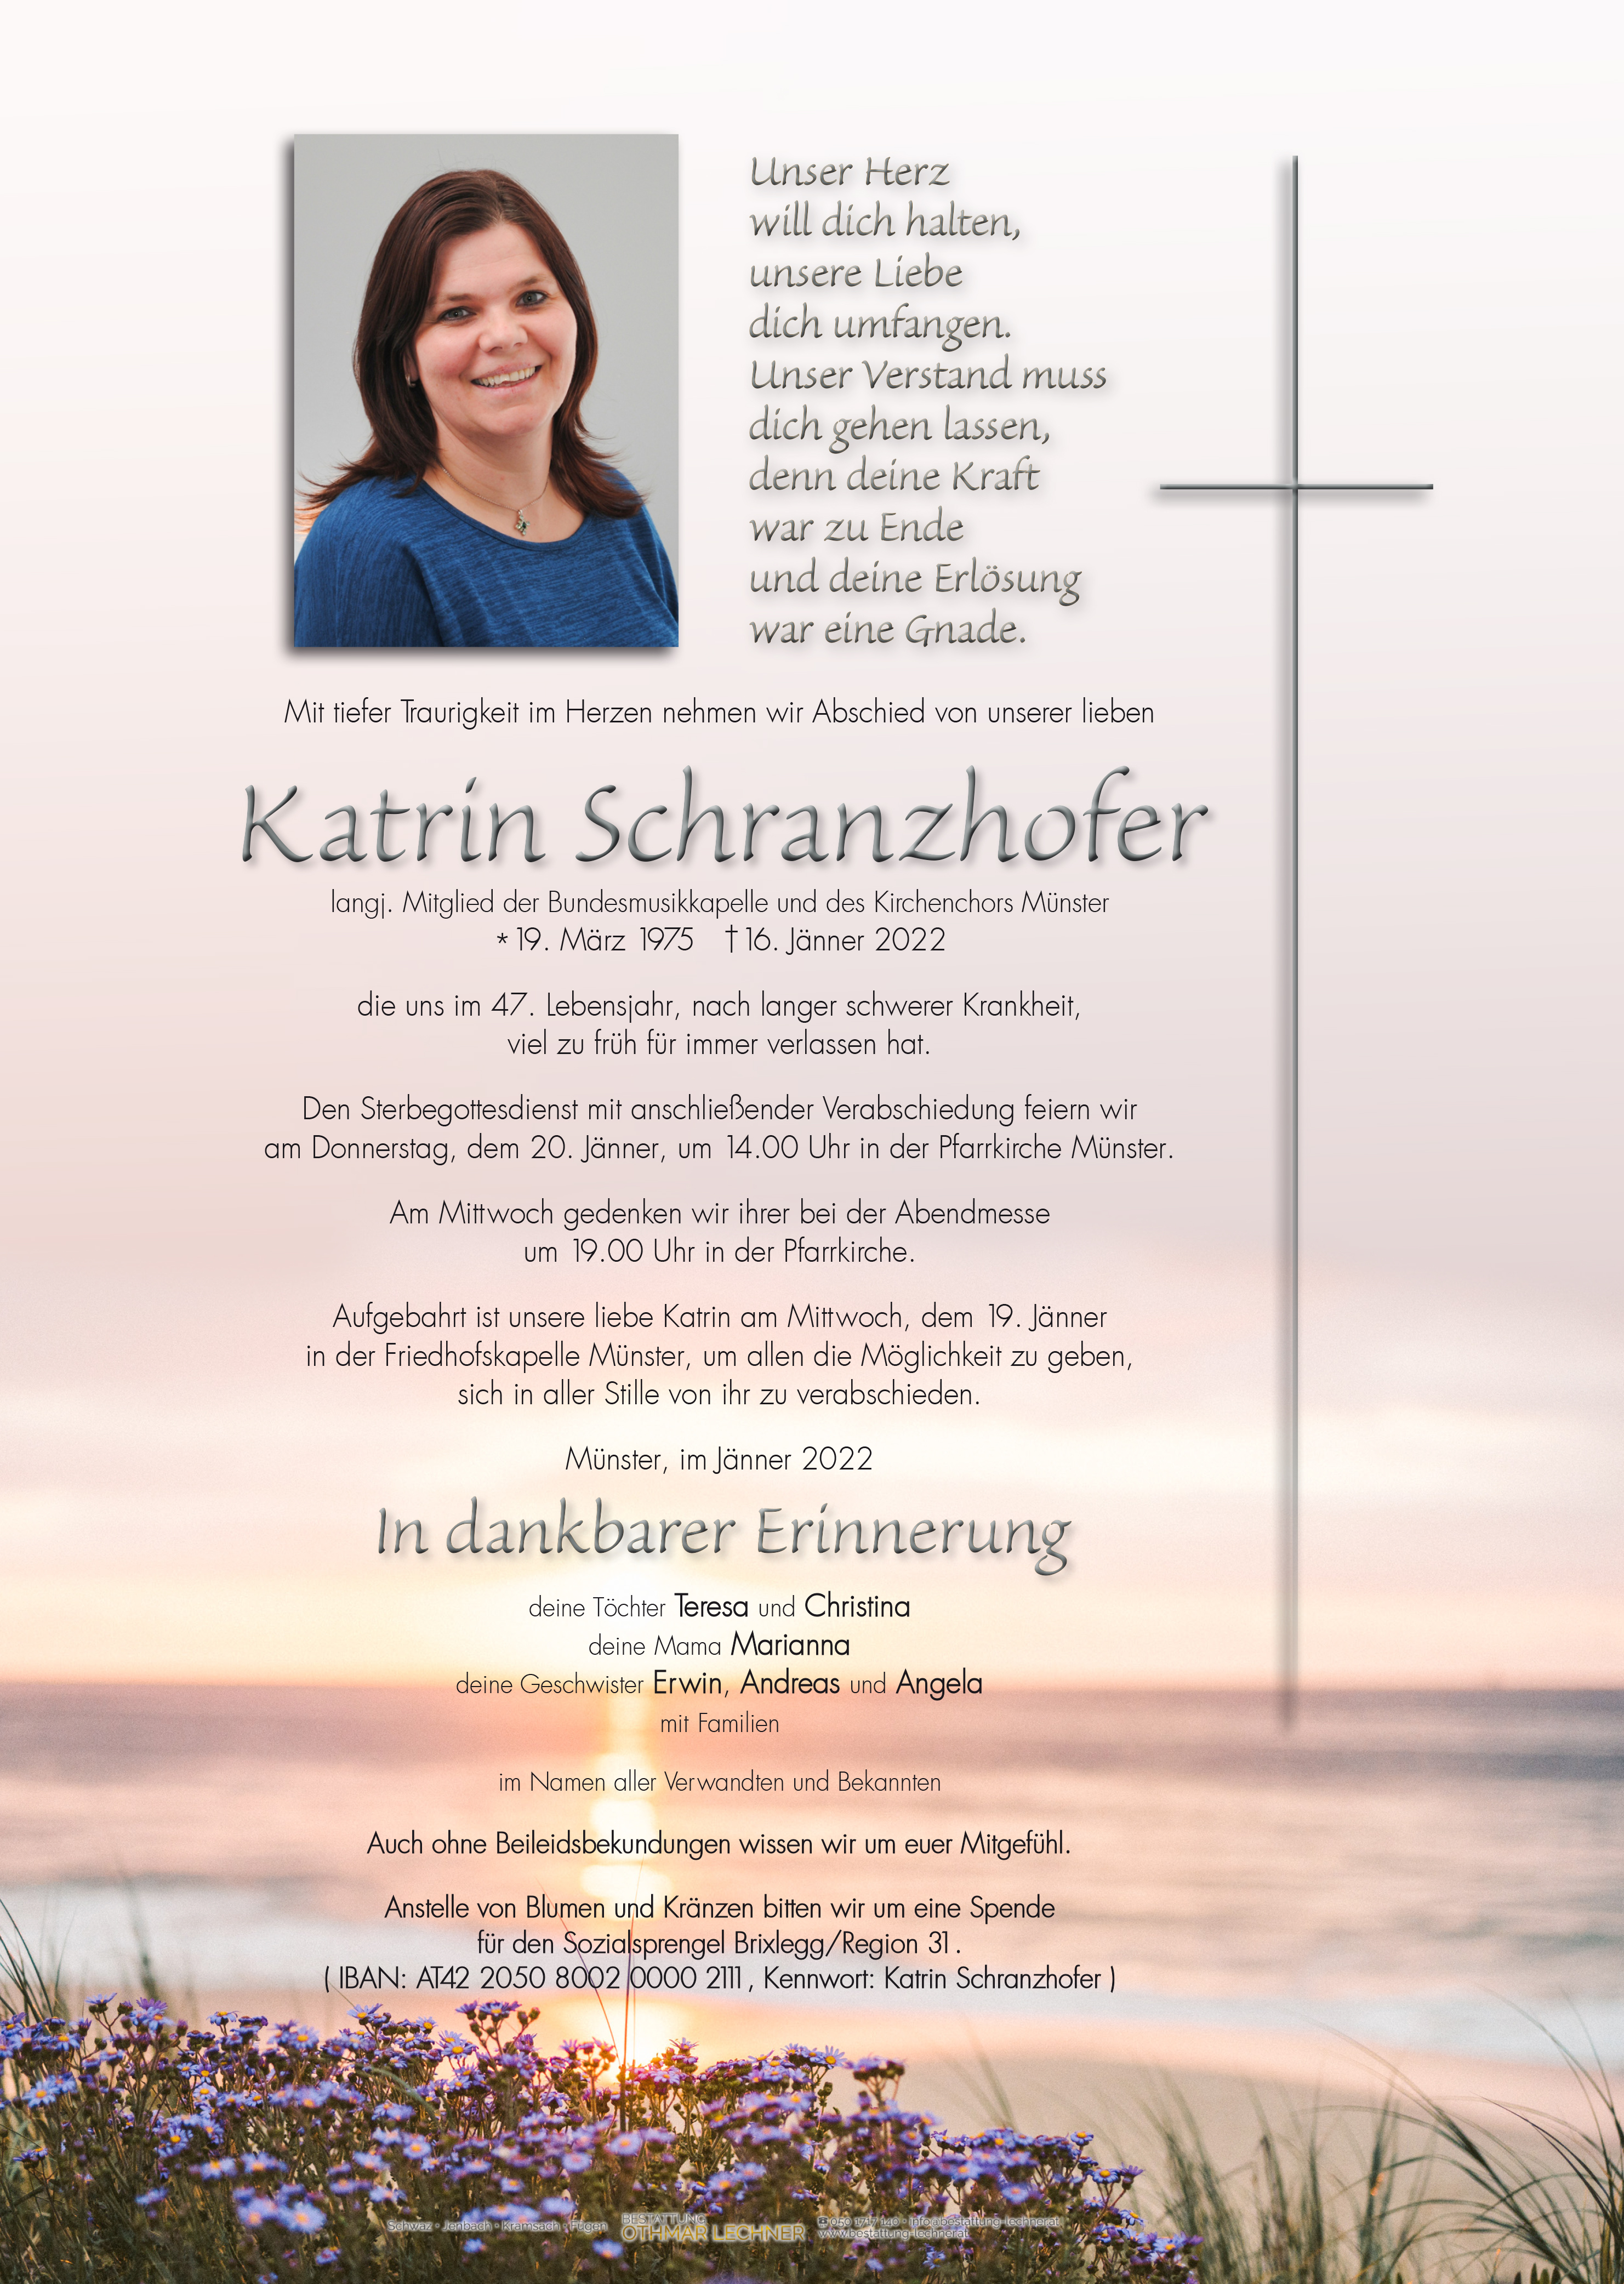 Katrin Schranzhofer